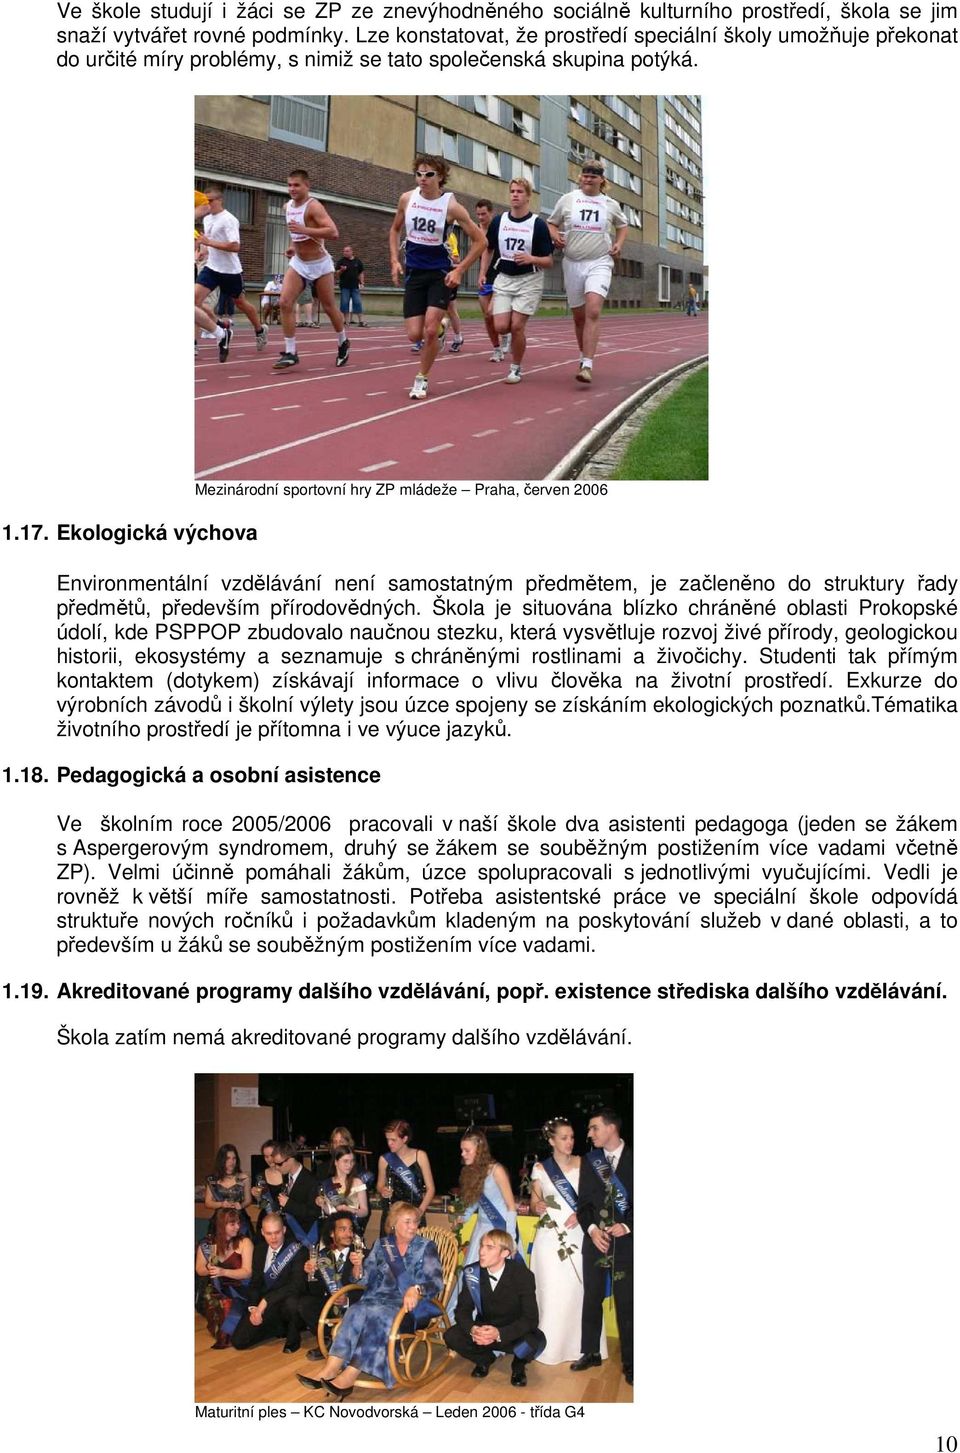 Ekologická výchova Mezinárodní sportovní hry ZP mládeže Praha, červen 2006 Environmentální vzdělávání není samostatným předmětem, je začleněno do struktury řady předmětů, především přírodovědných.